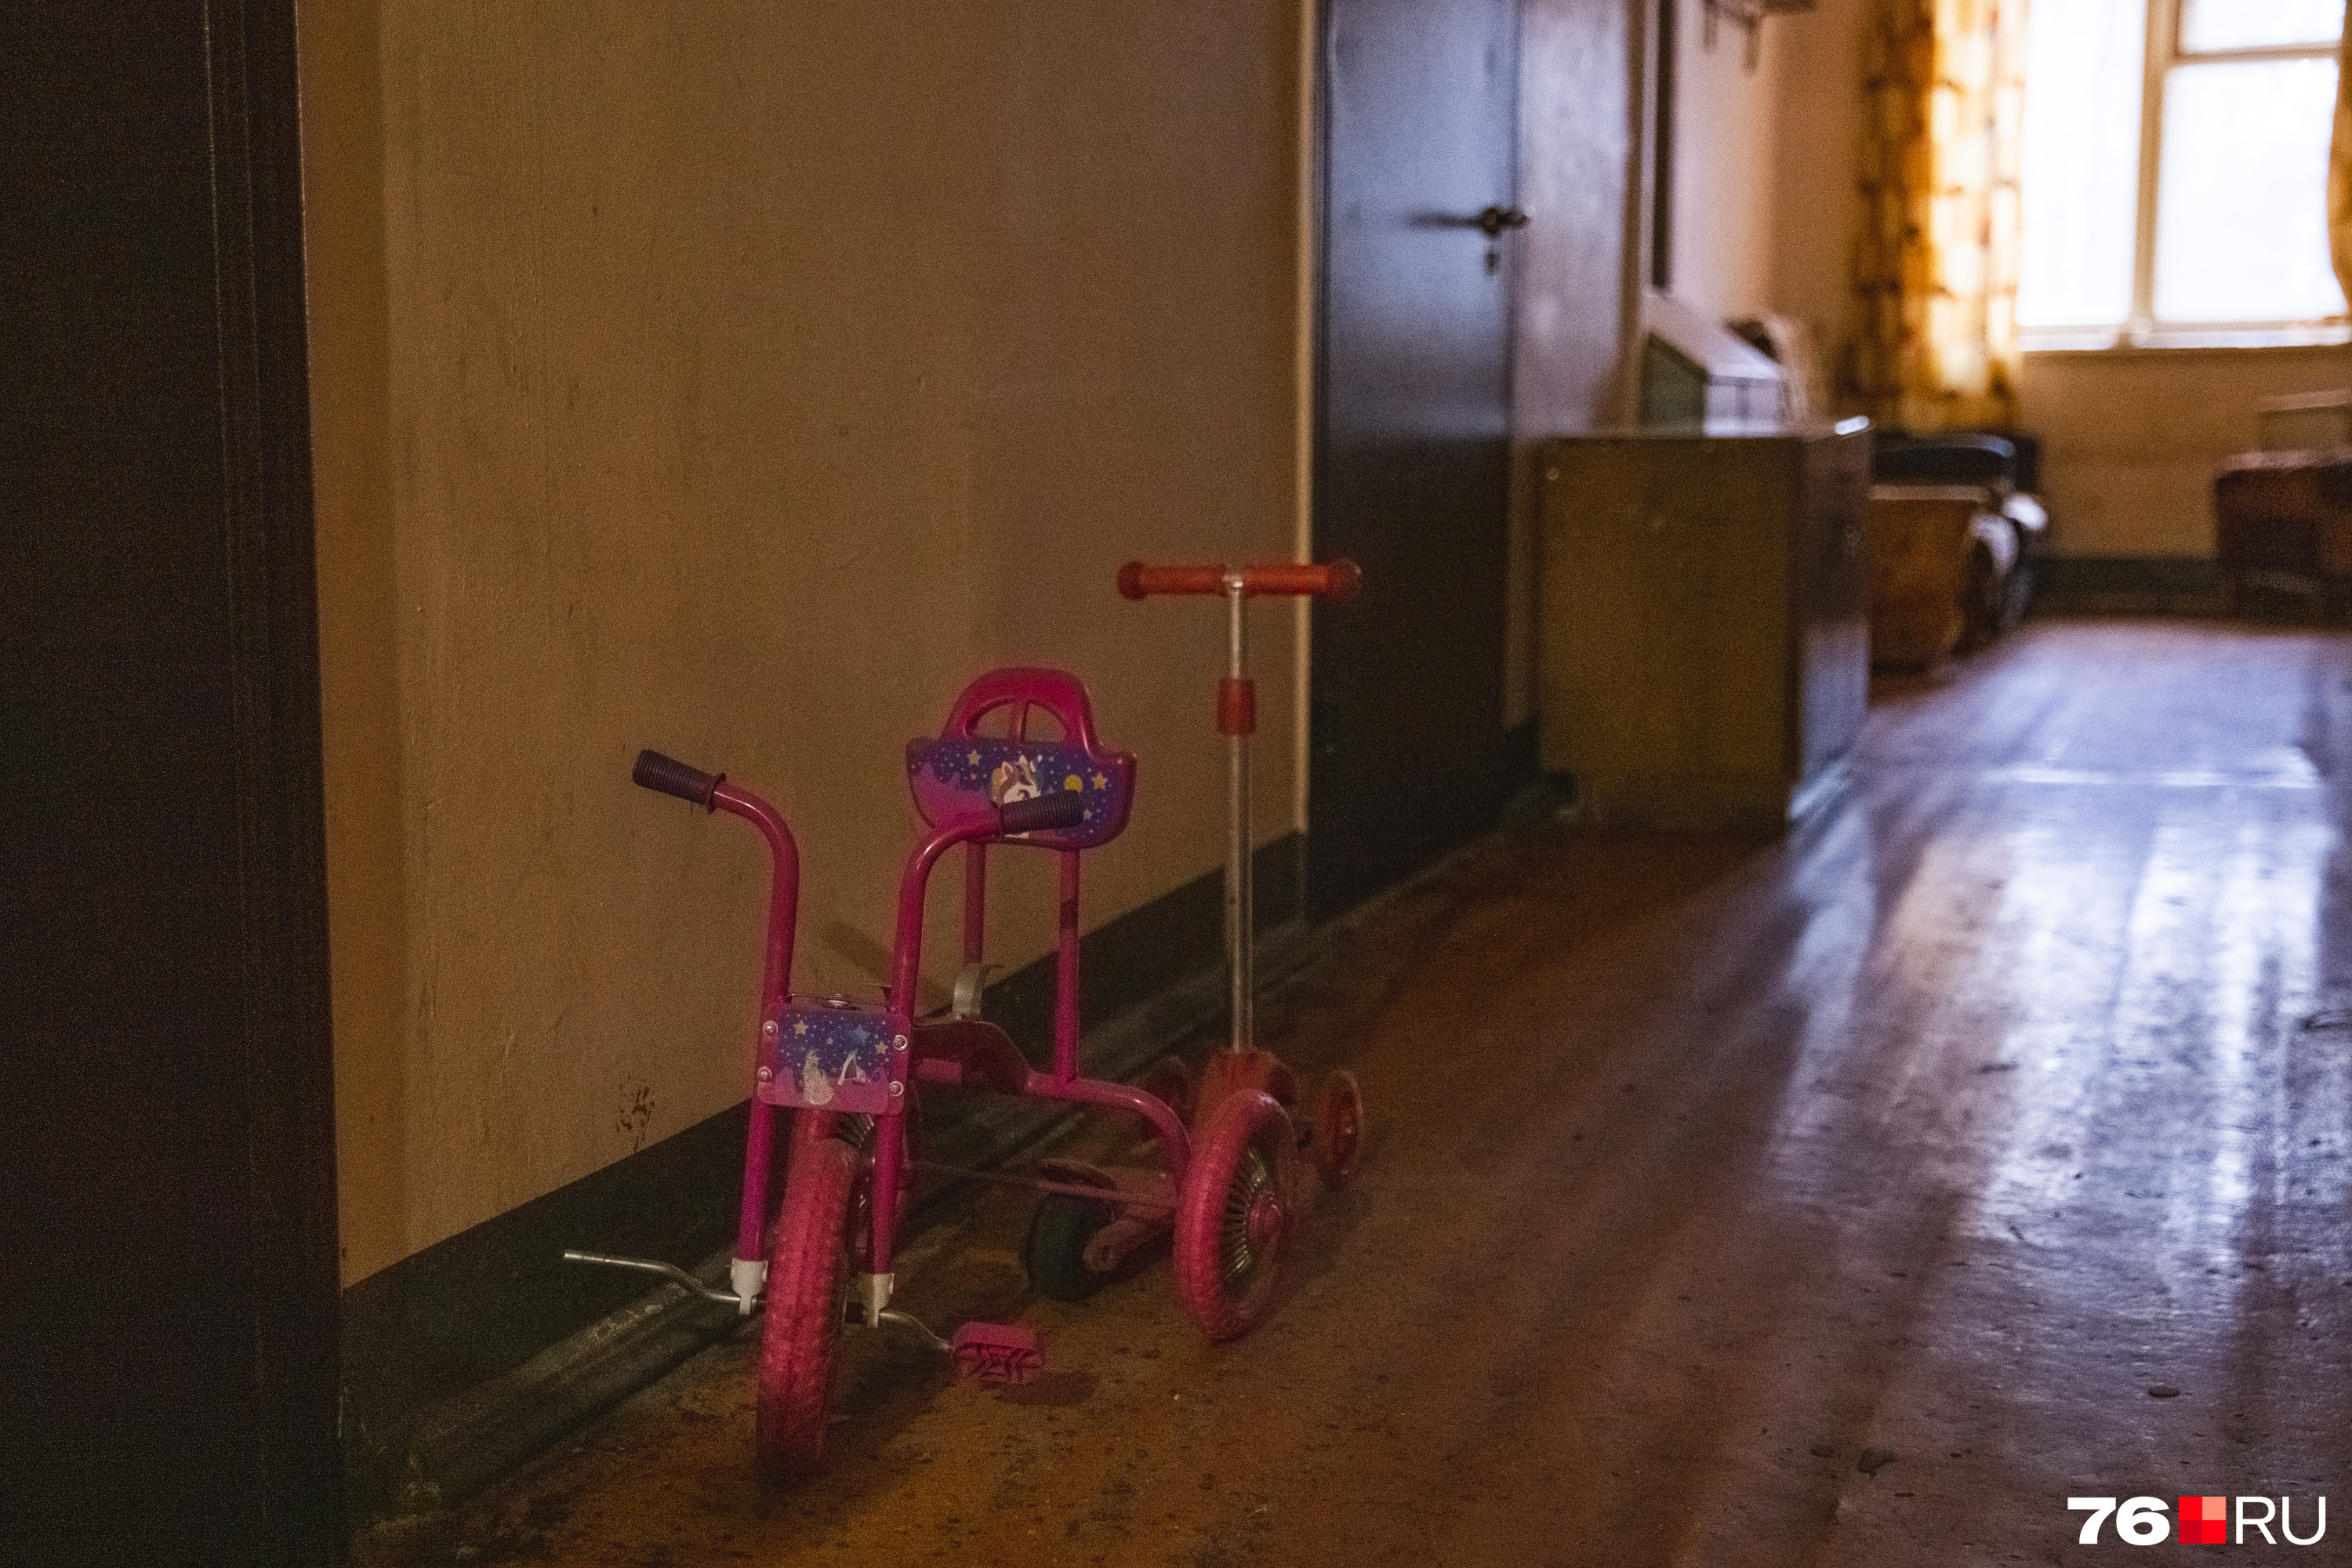 Детский велосипед в коридоре общежития — классика, дошедшая до нас с советских времен